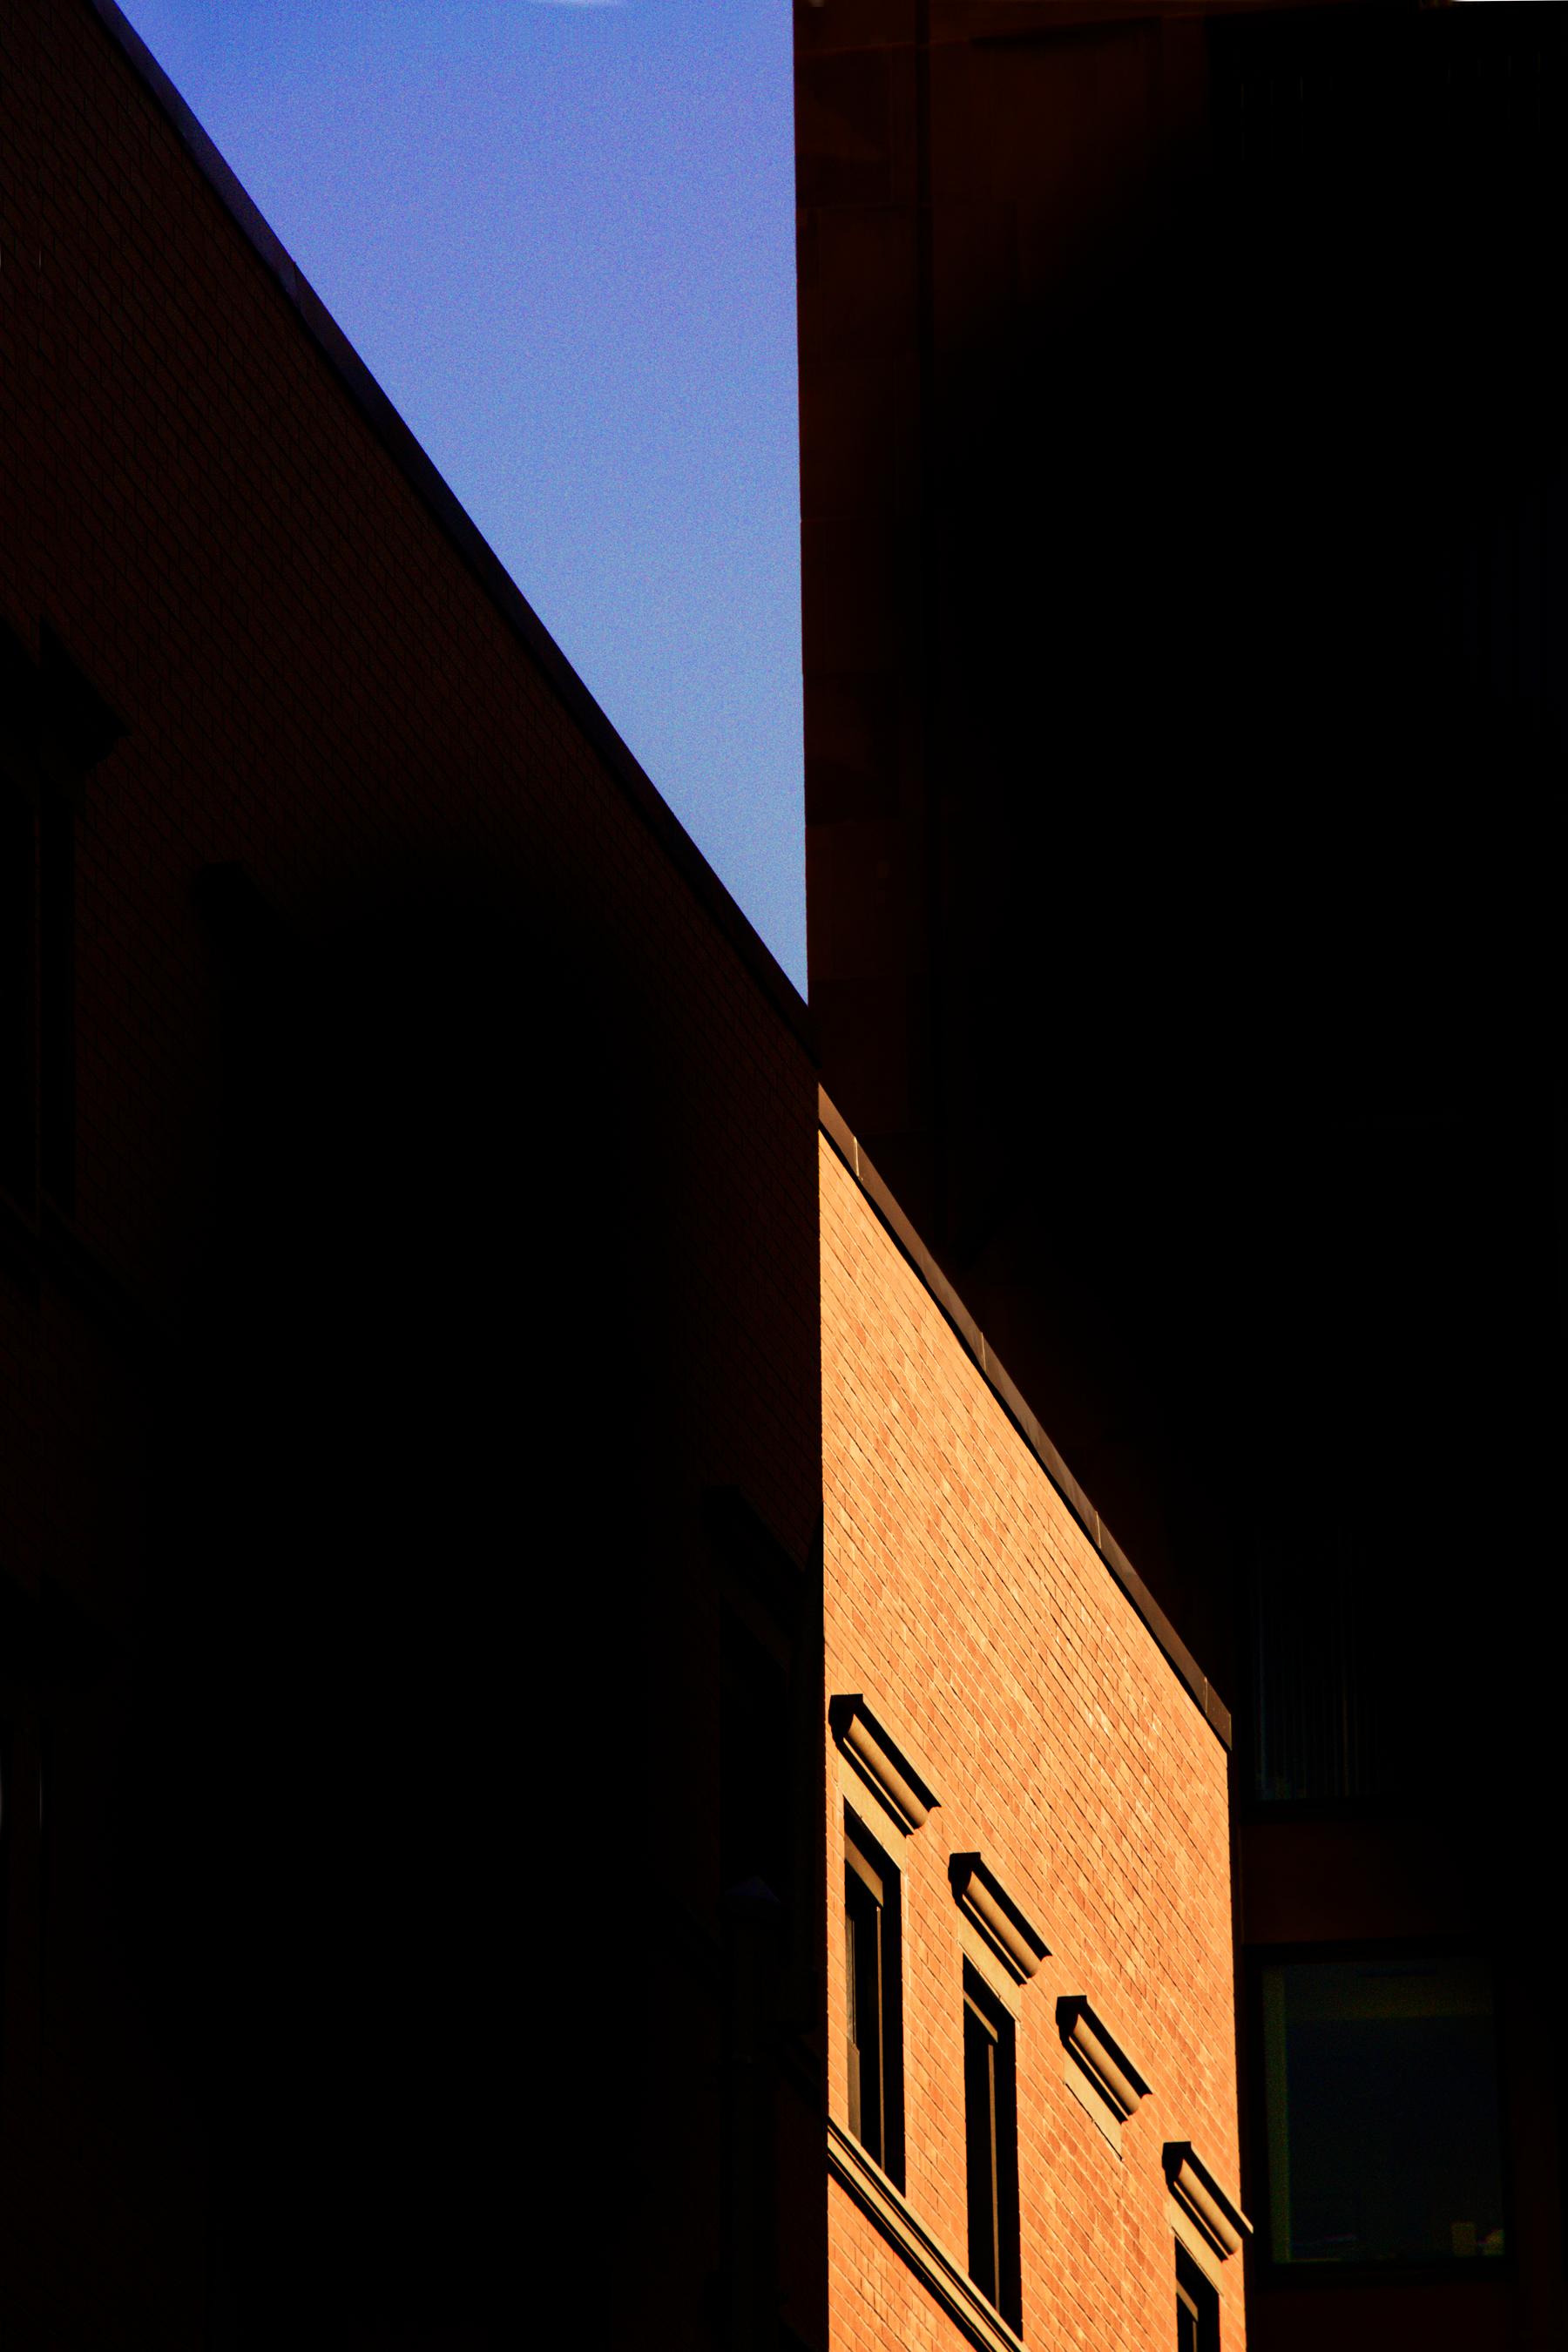 Color Photograph Bob Krasner - « Light, Shadow & Blue Sky », photographie, ville, architecture, bâtiment, géométrie